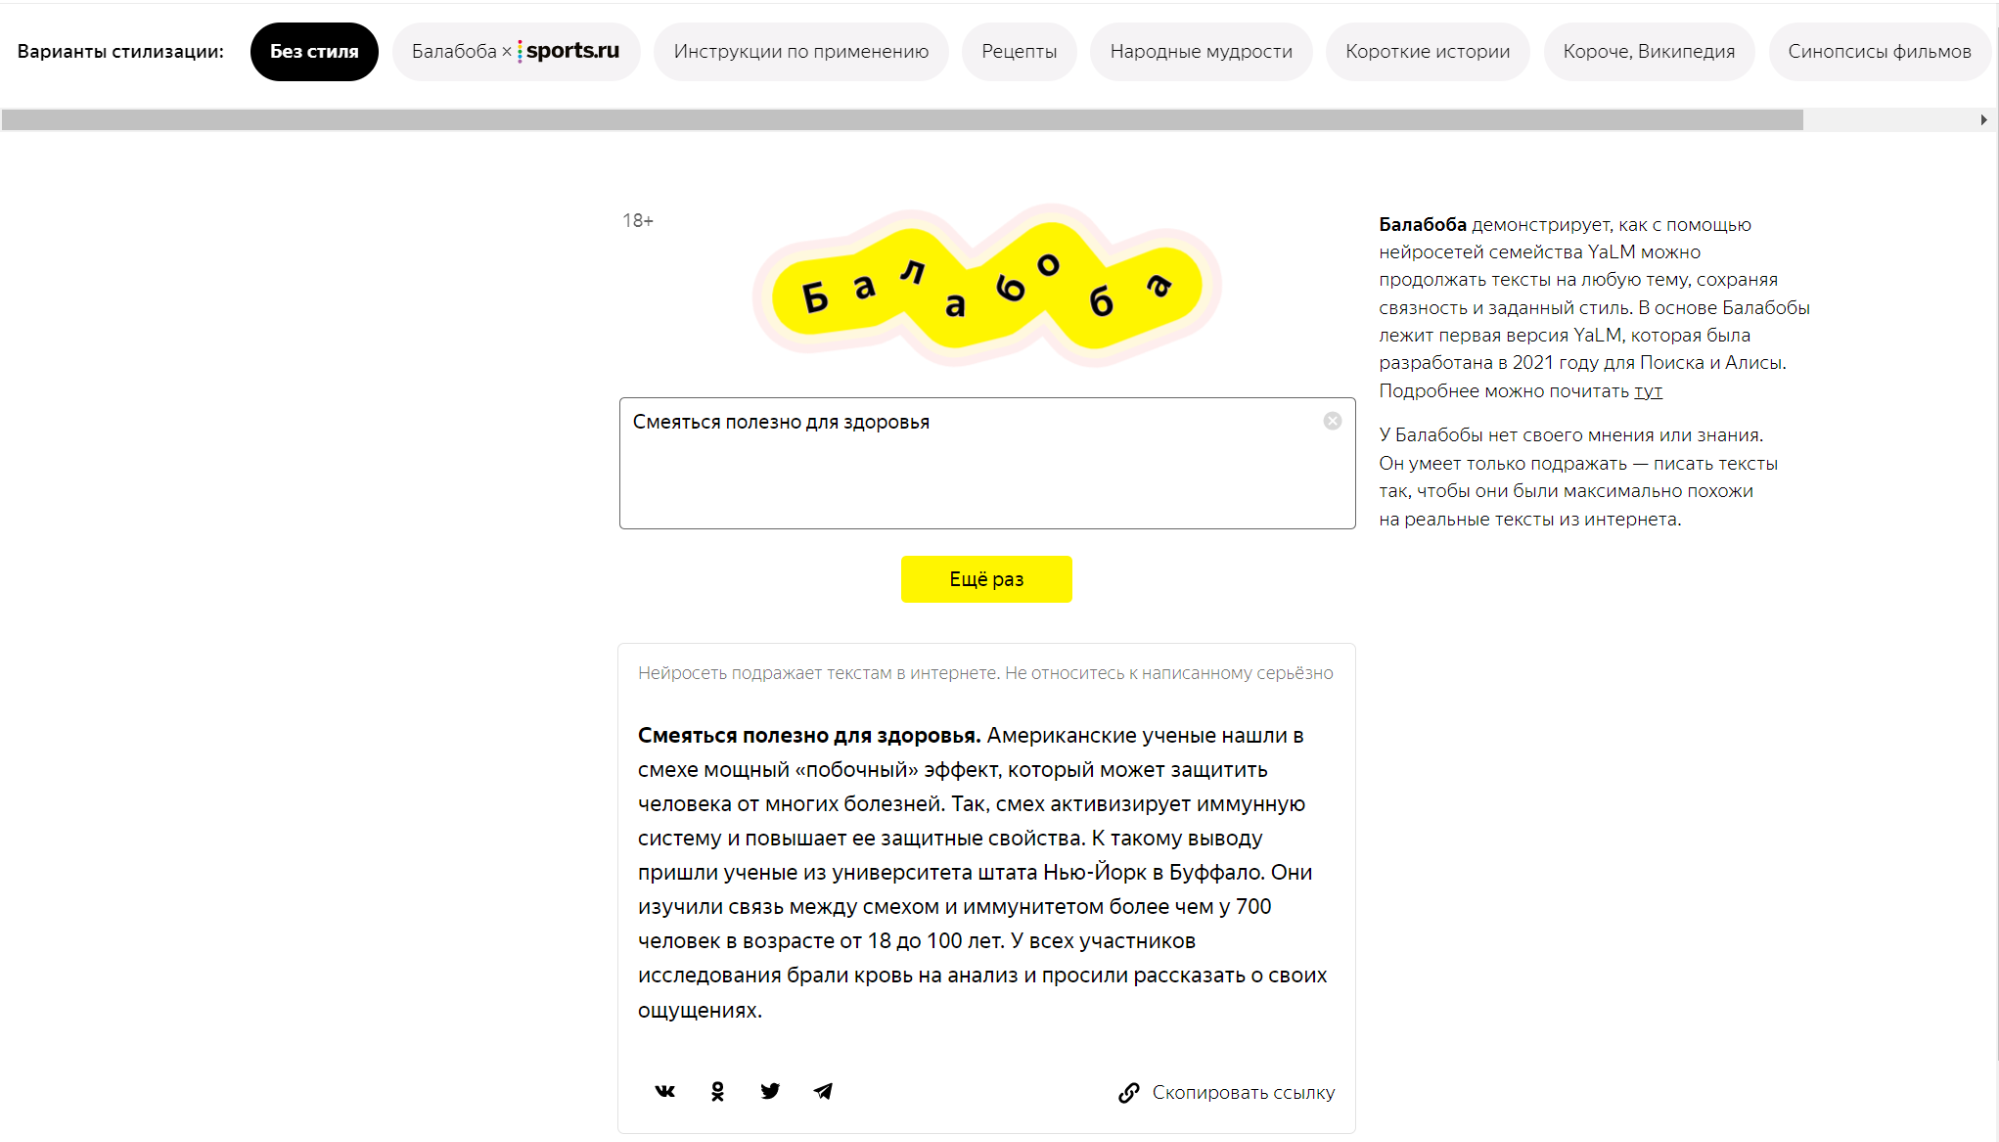 Сгенерировать текст песни нейросетью. Нейросеть от Яндекса. Балабоба логотип.